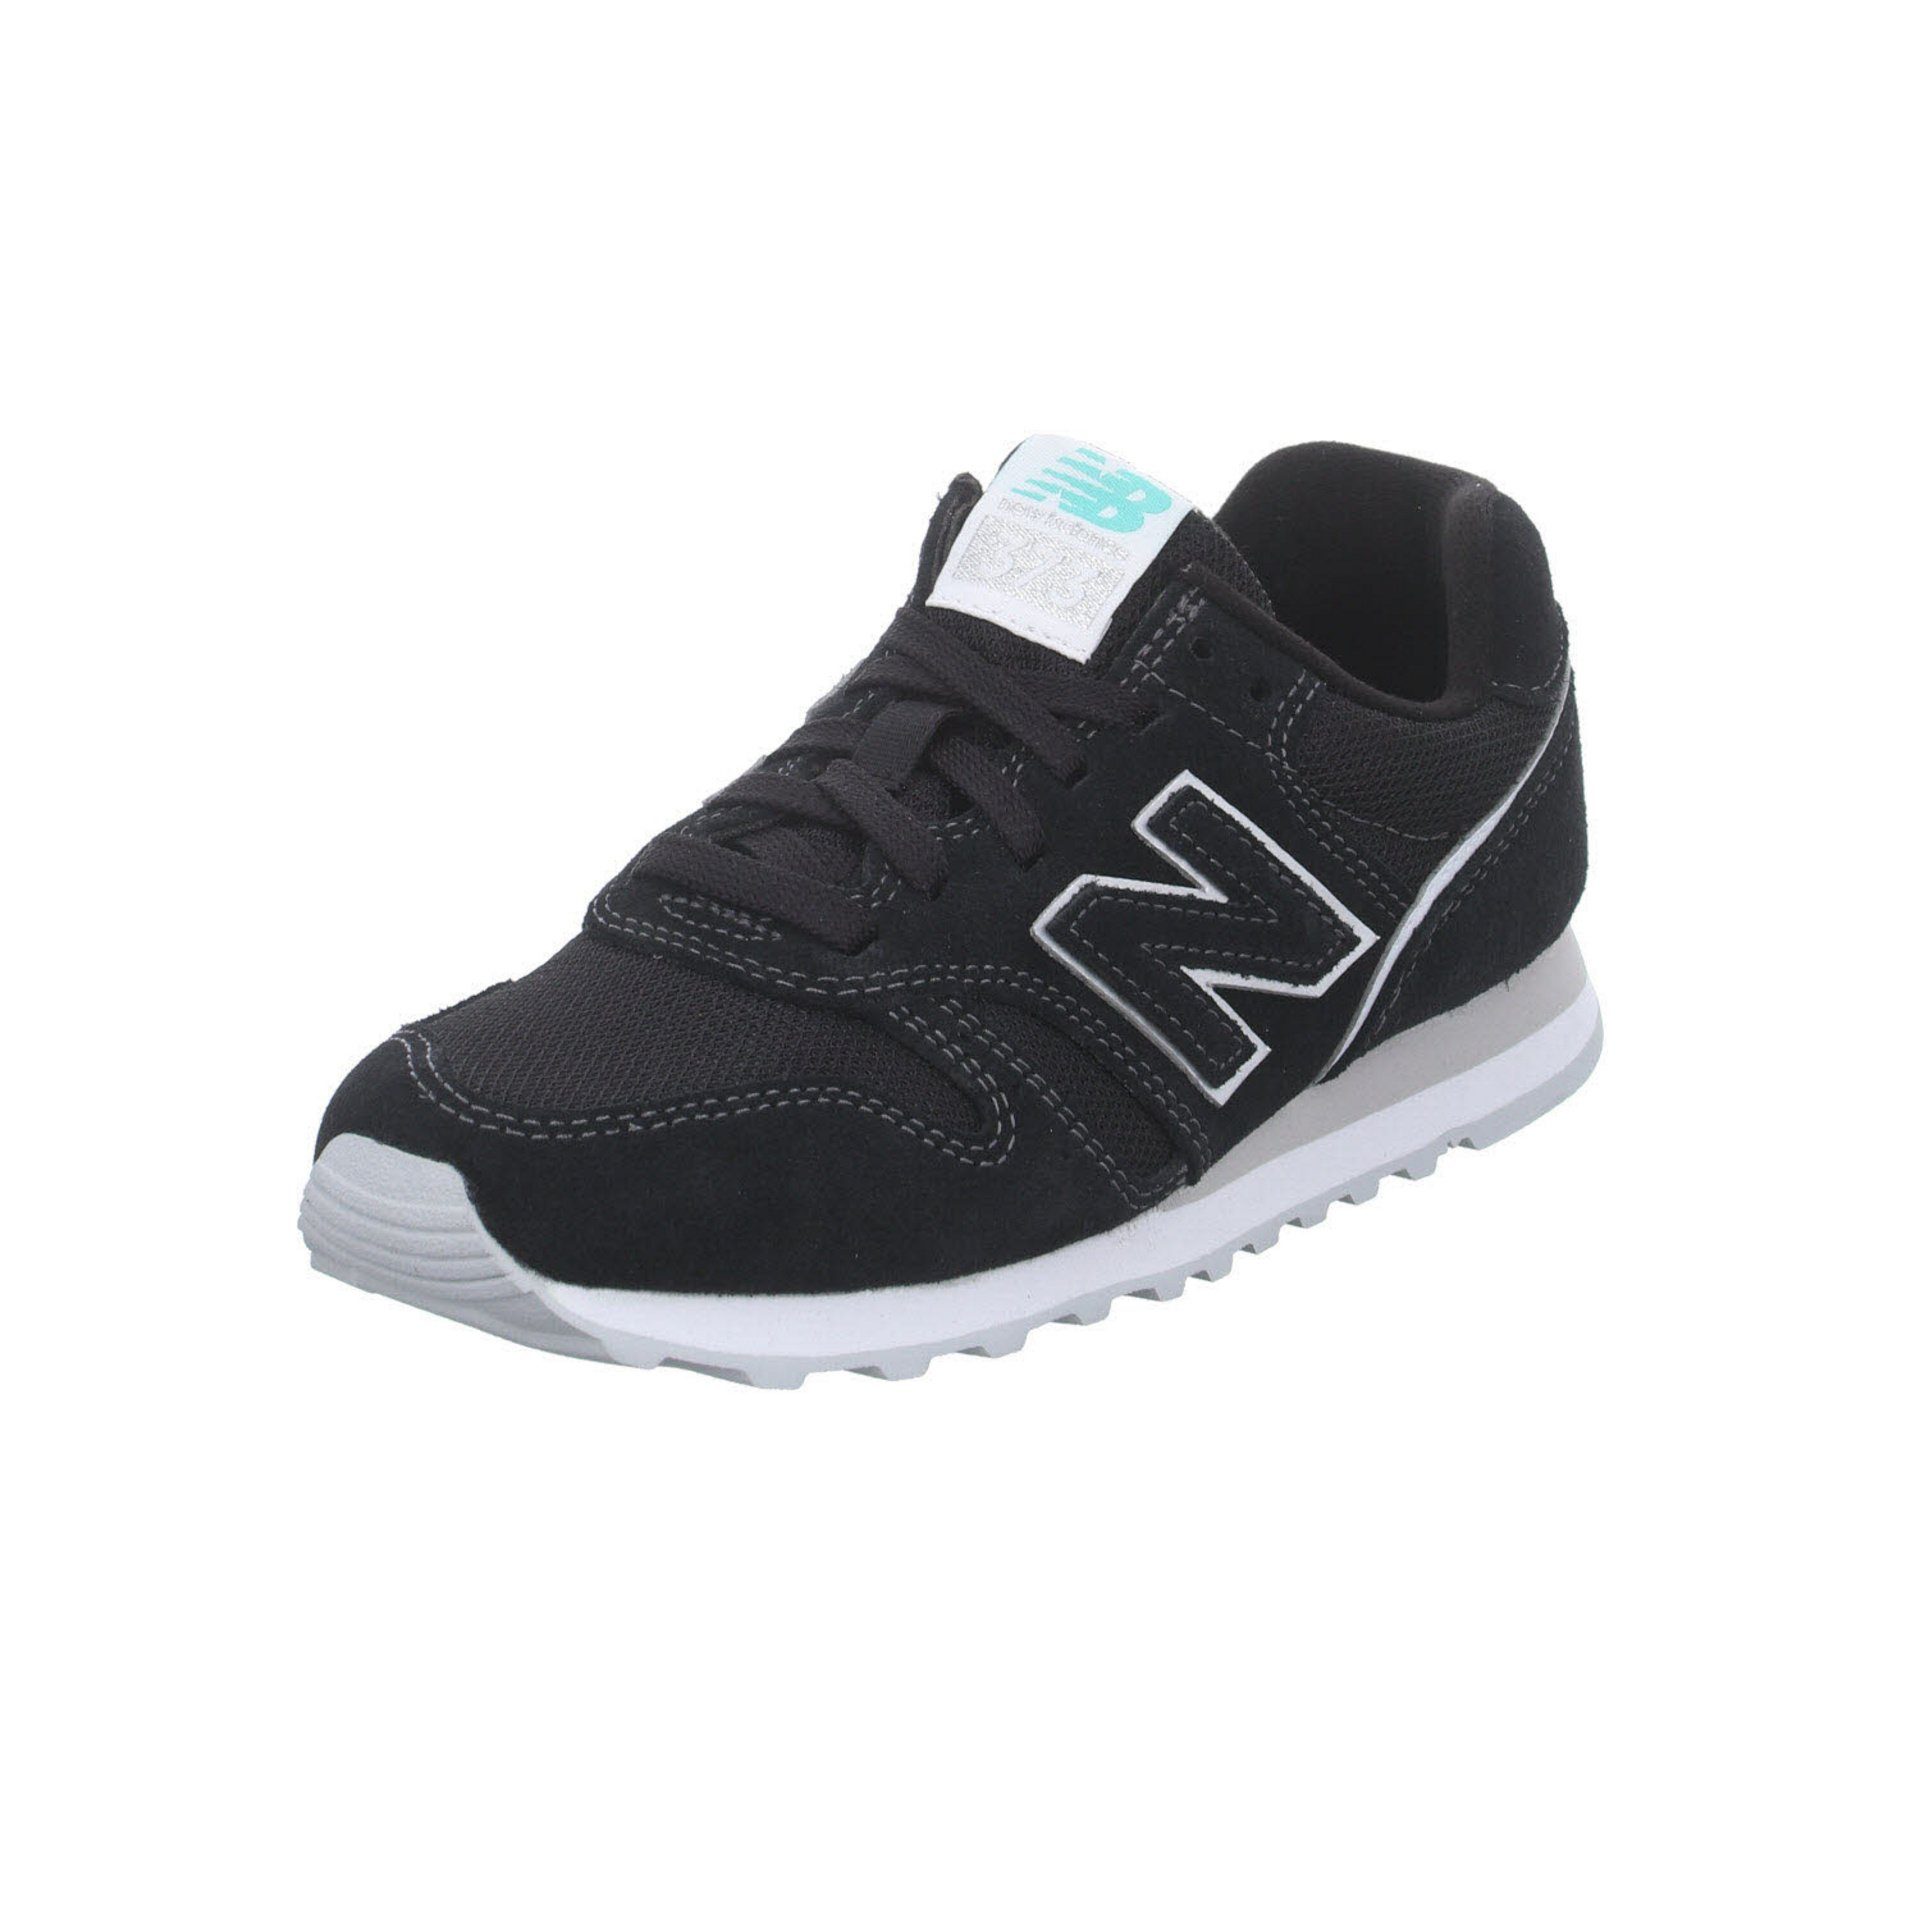 New Balance »WL 373 Damen« Sneaker online kaufen | OTTO